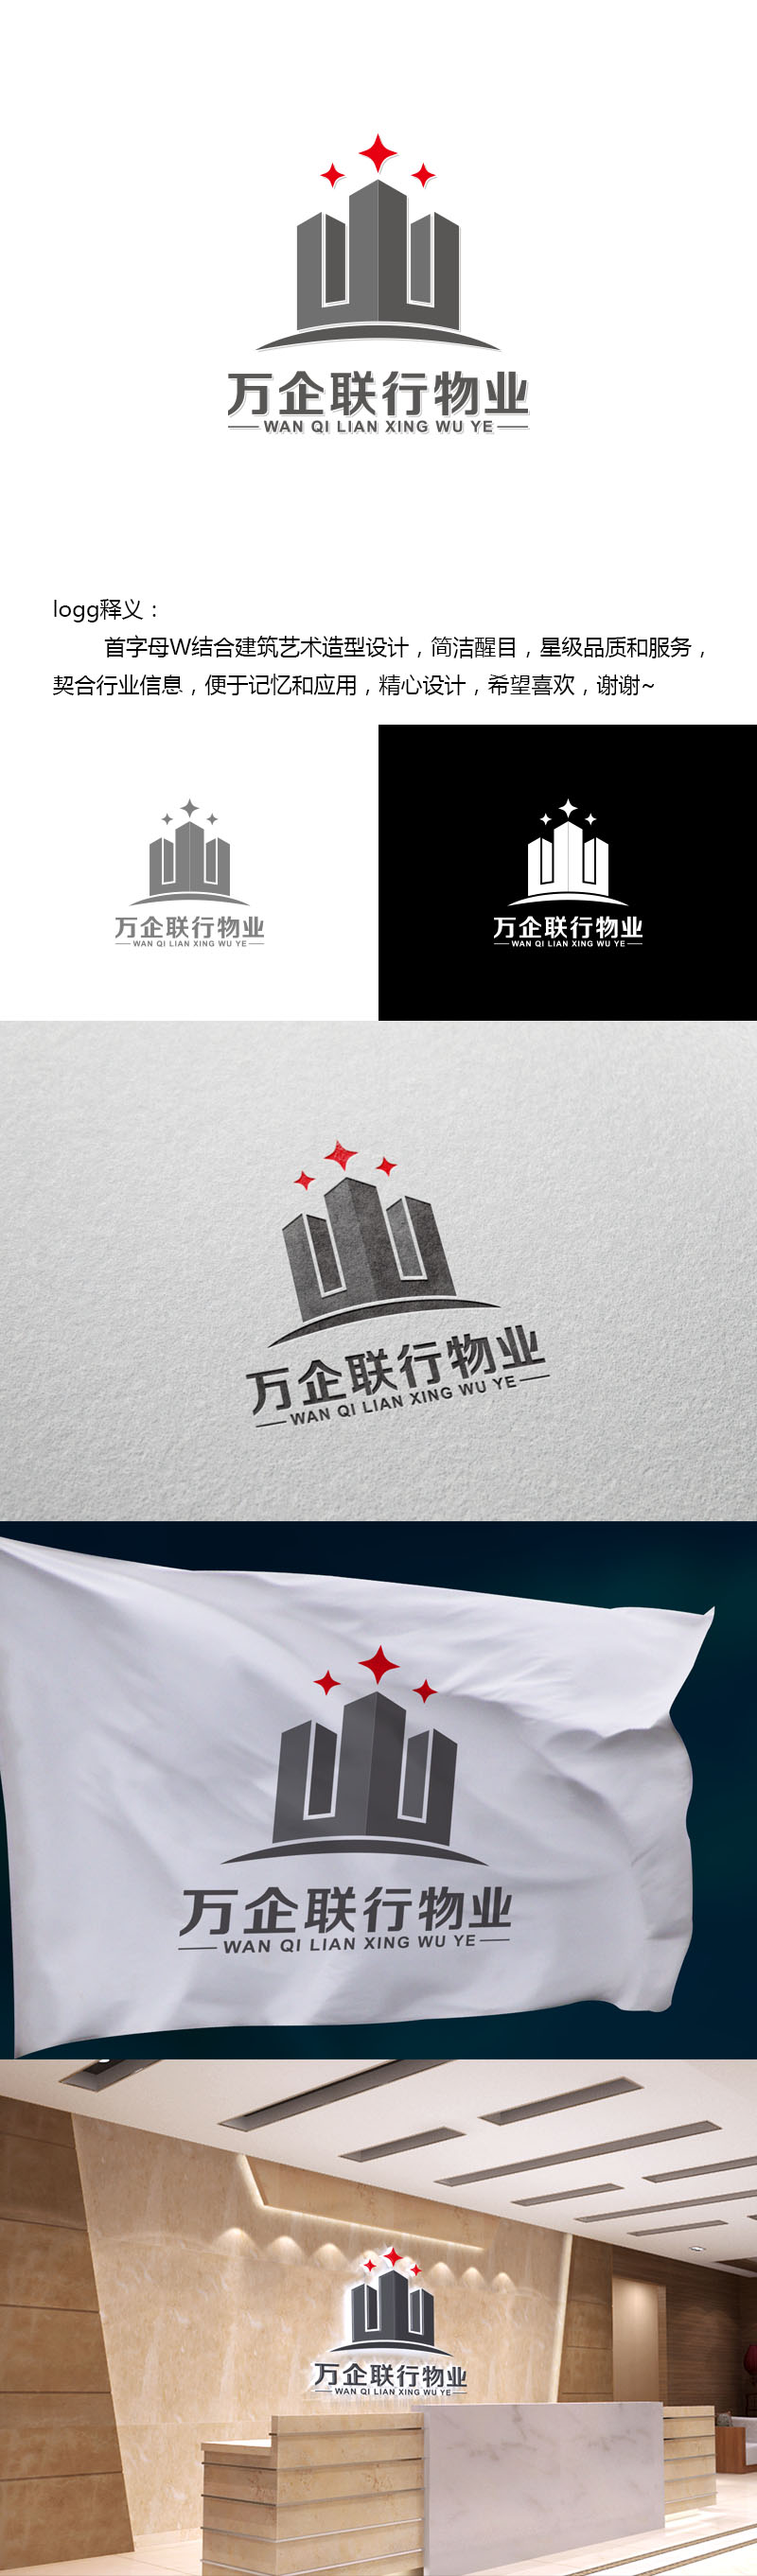 王涛的万企联行物业服务有限公司logo设计